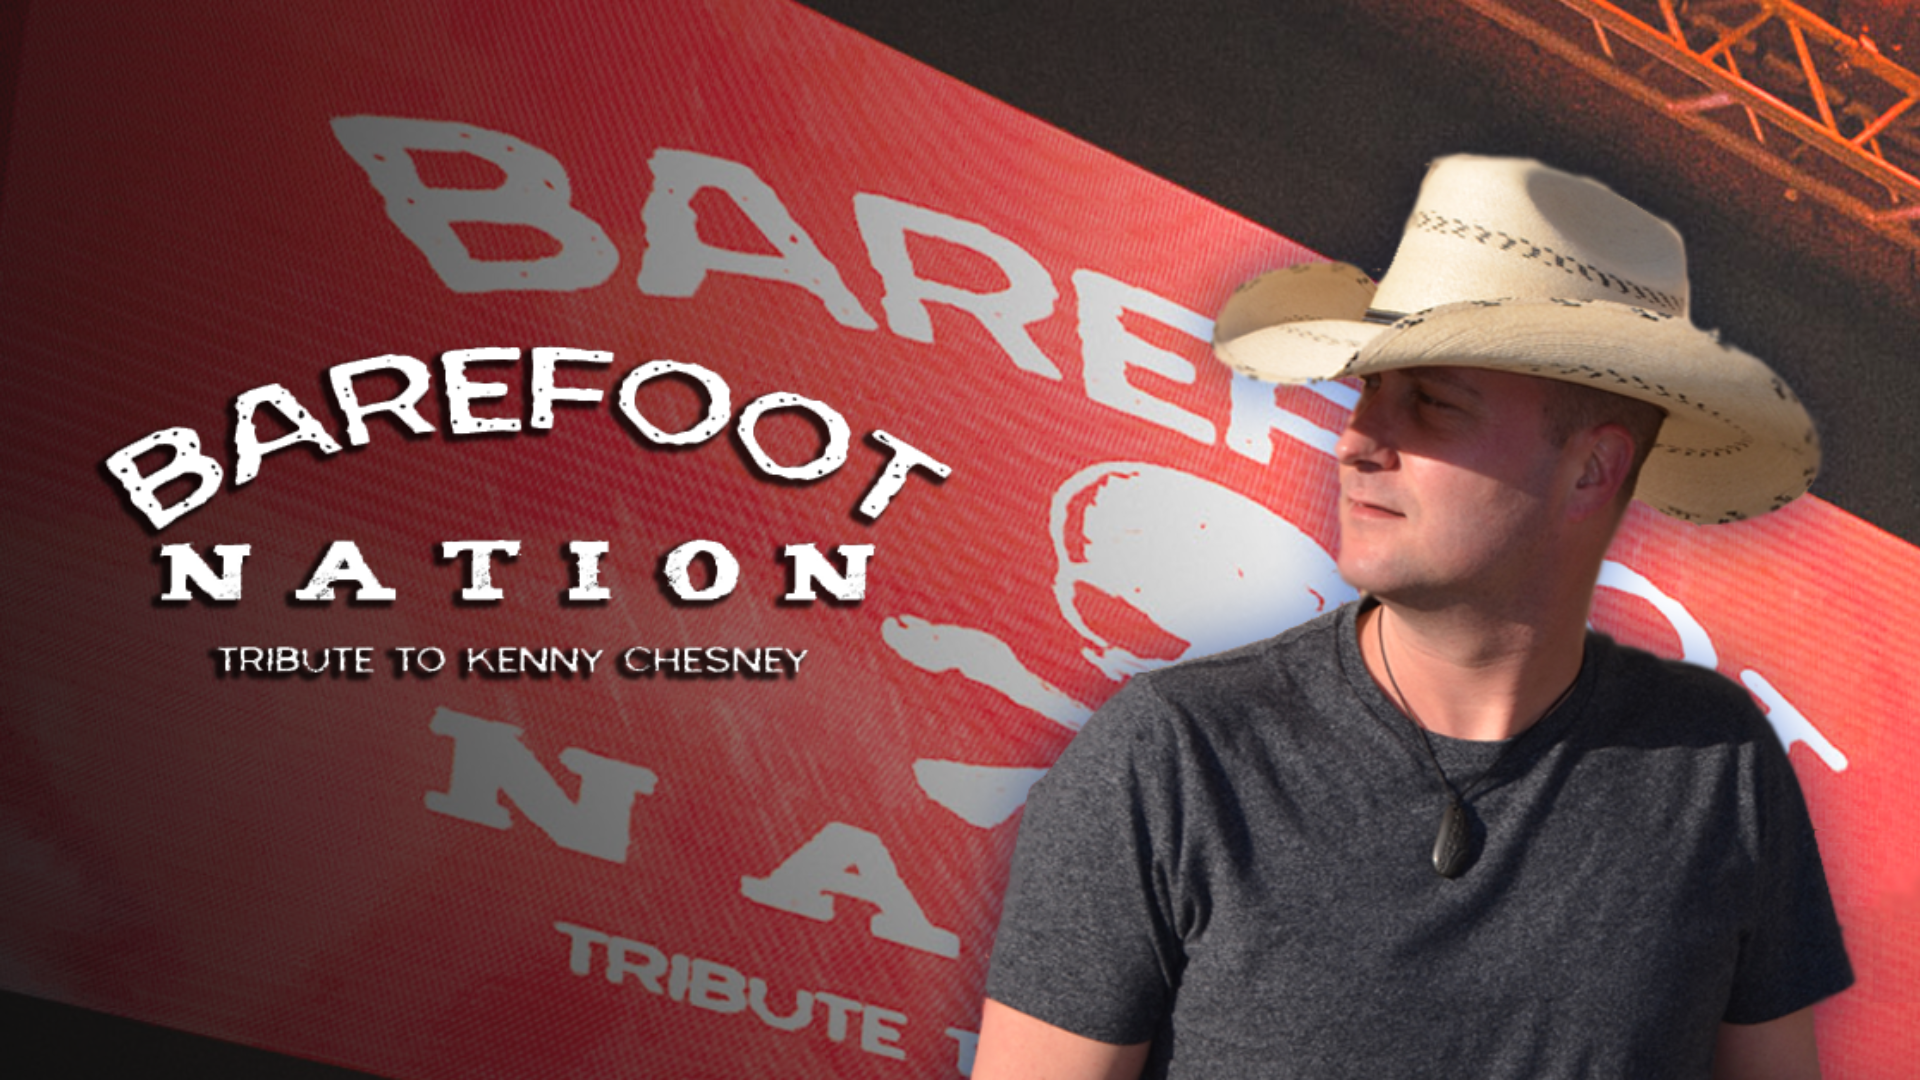 Kenny Chesney Tribute Barefoot Nation - hero